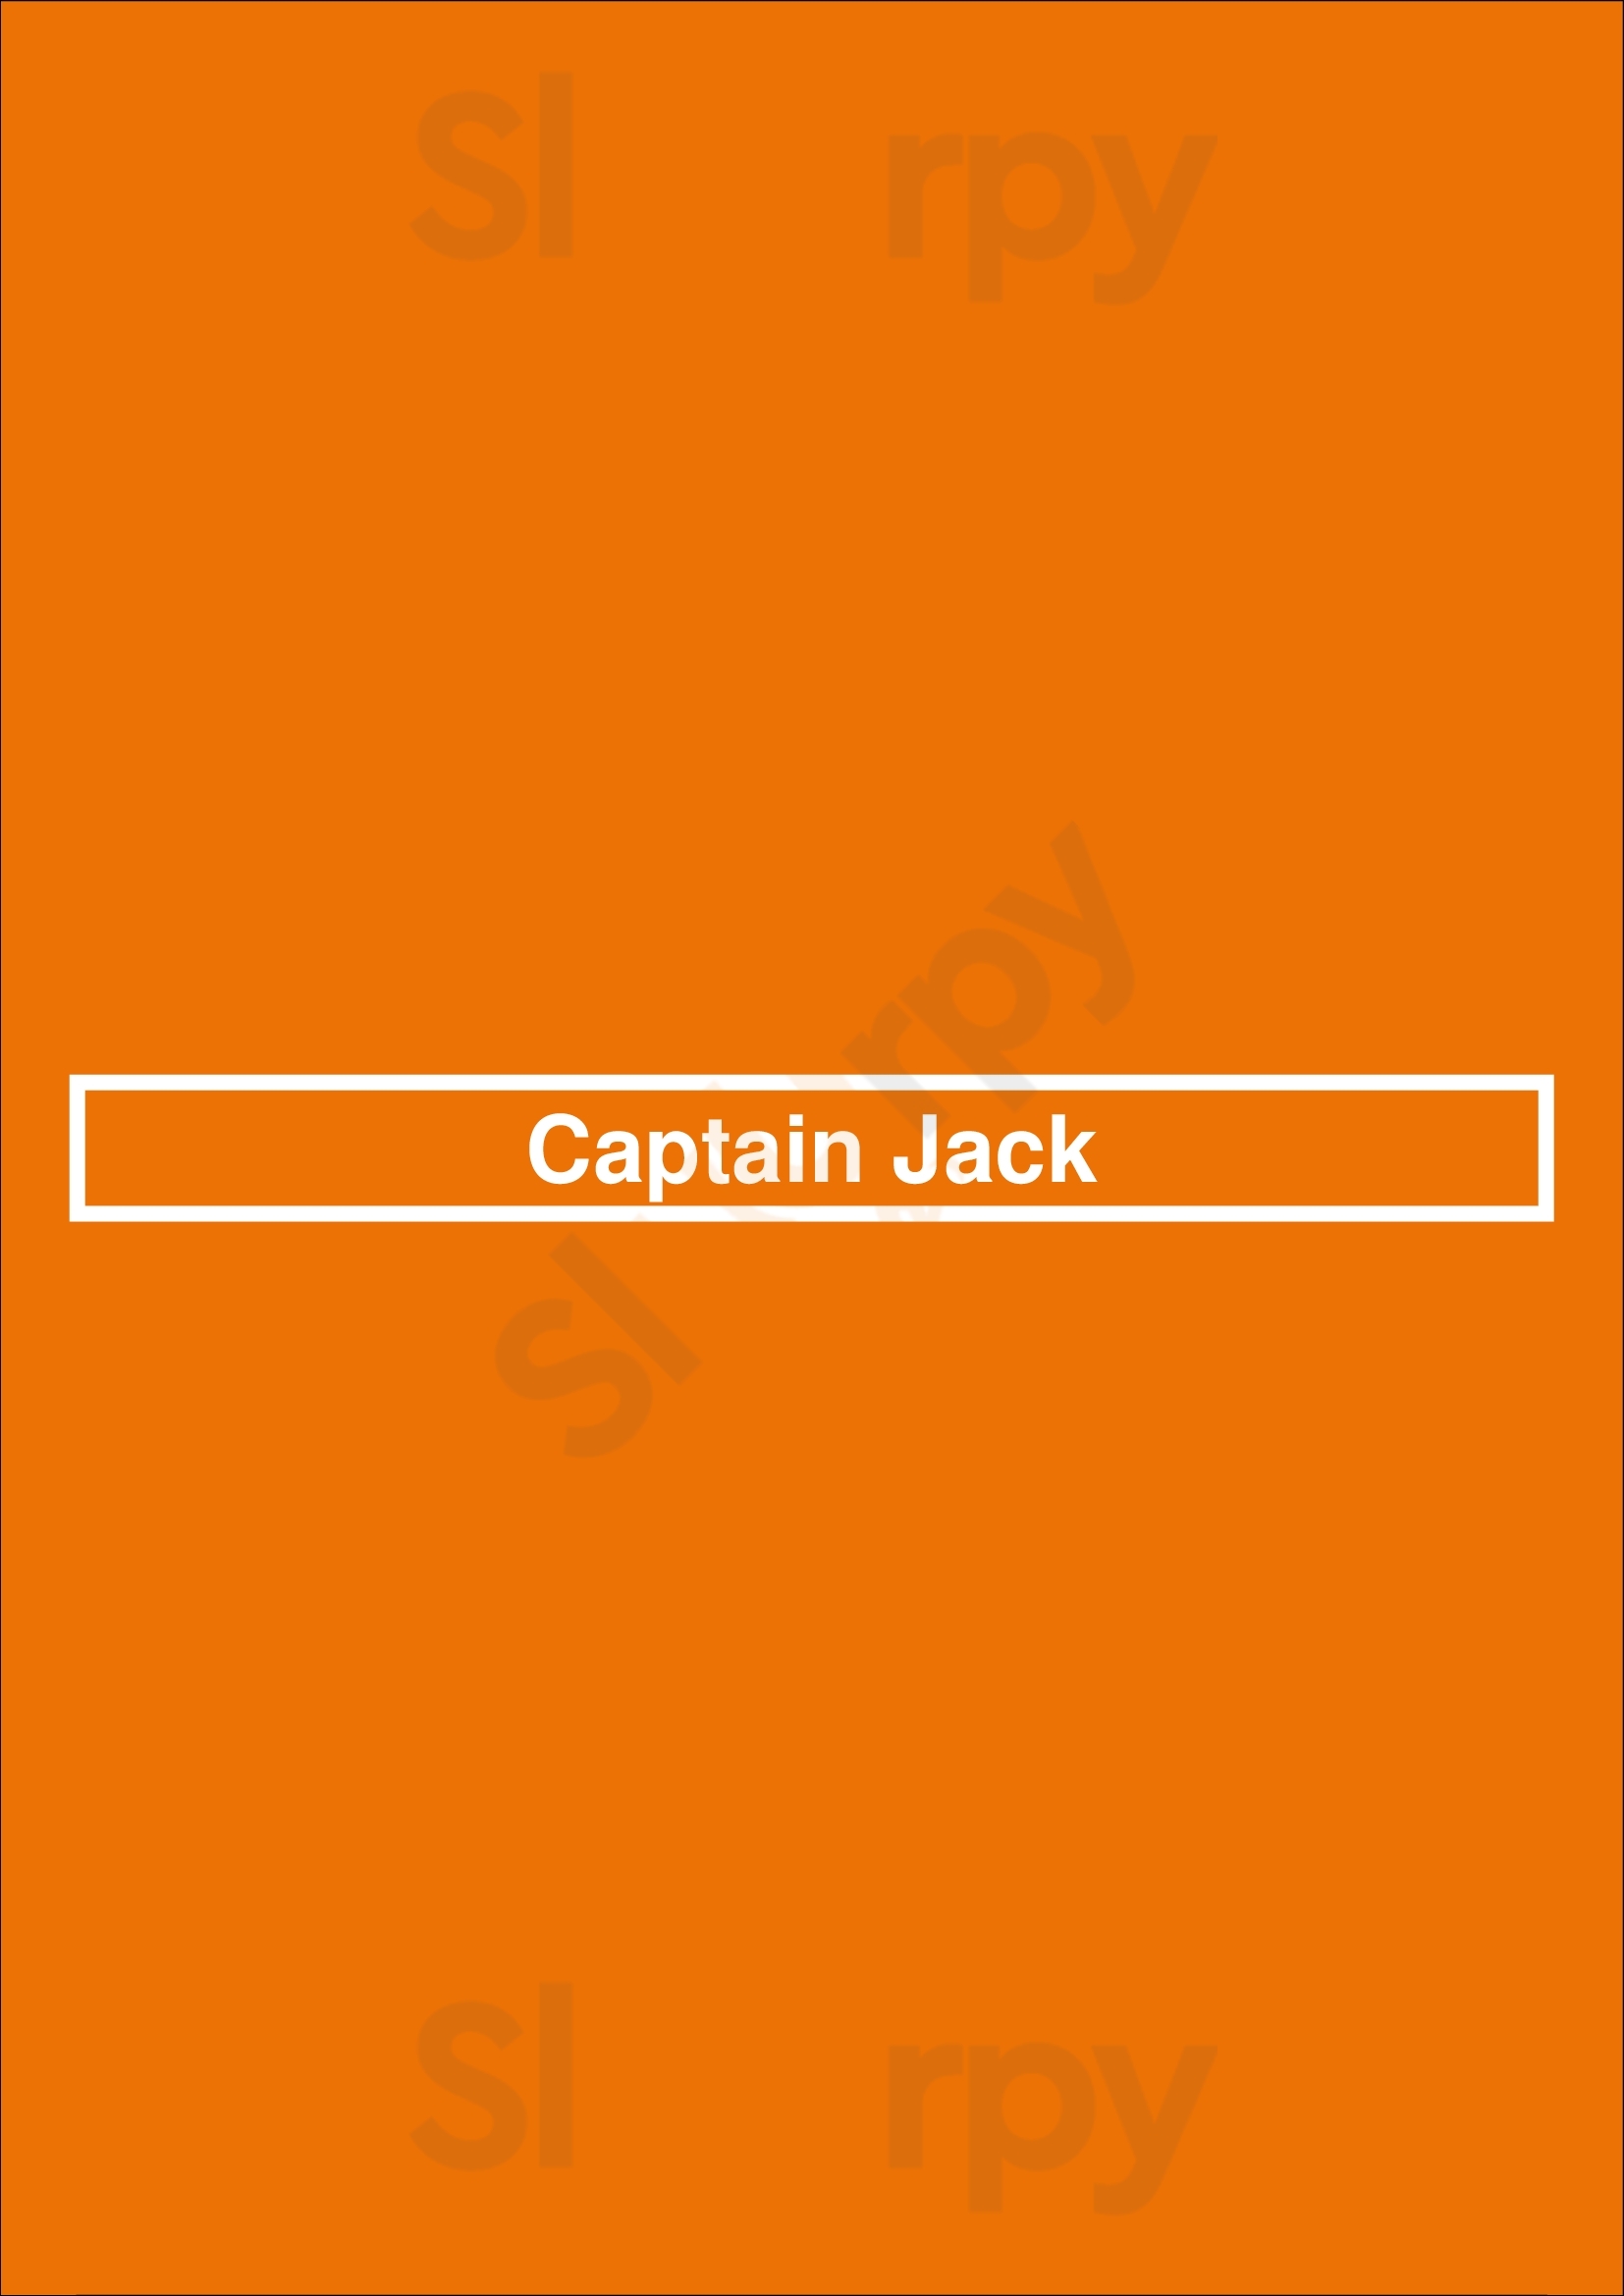 Captain Jack Knoxville Menu - 1